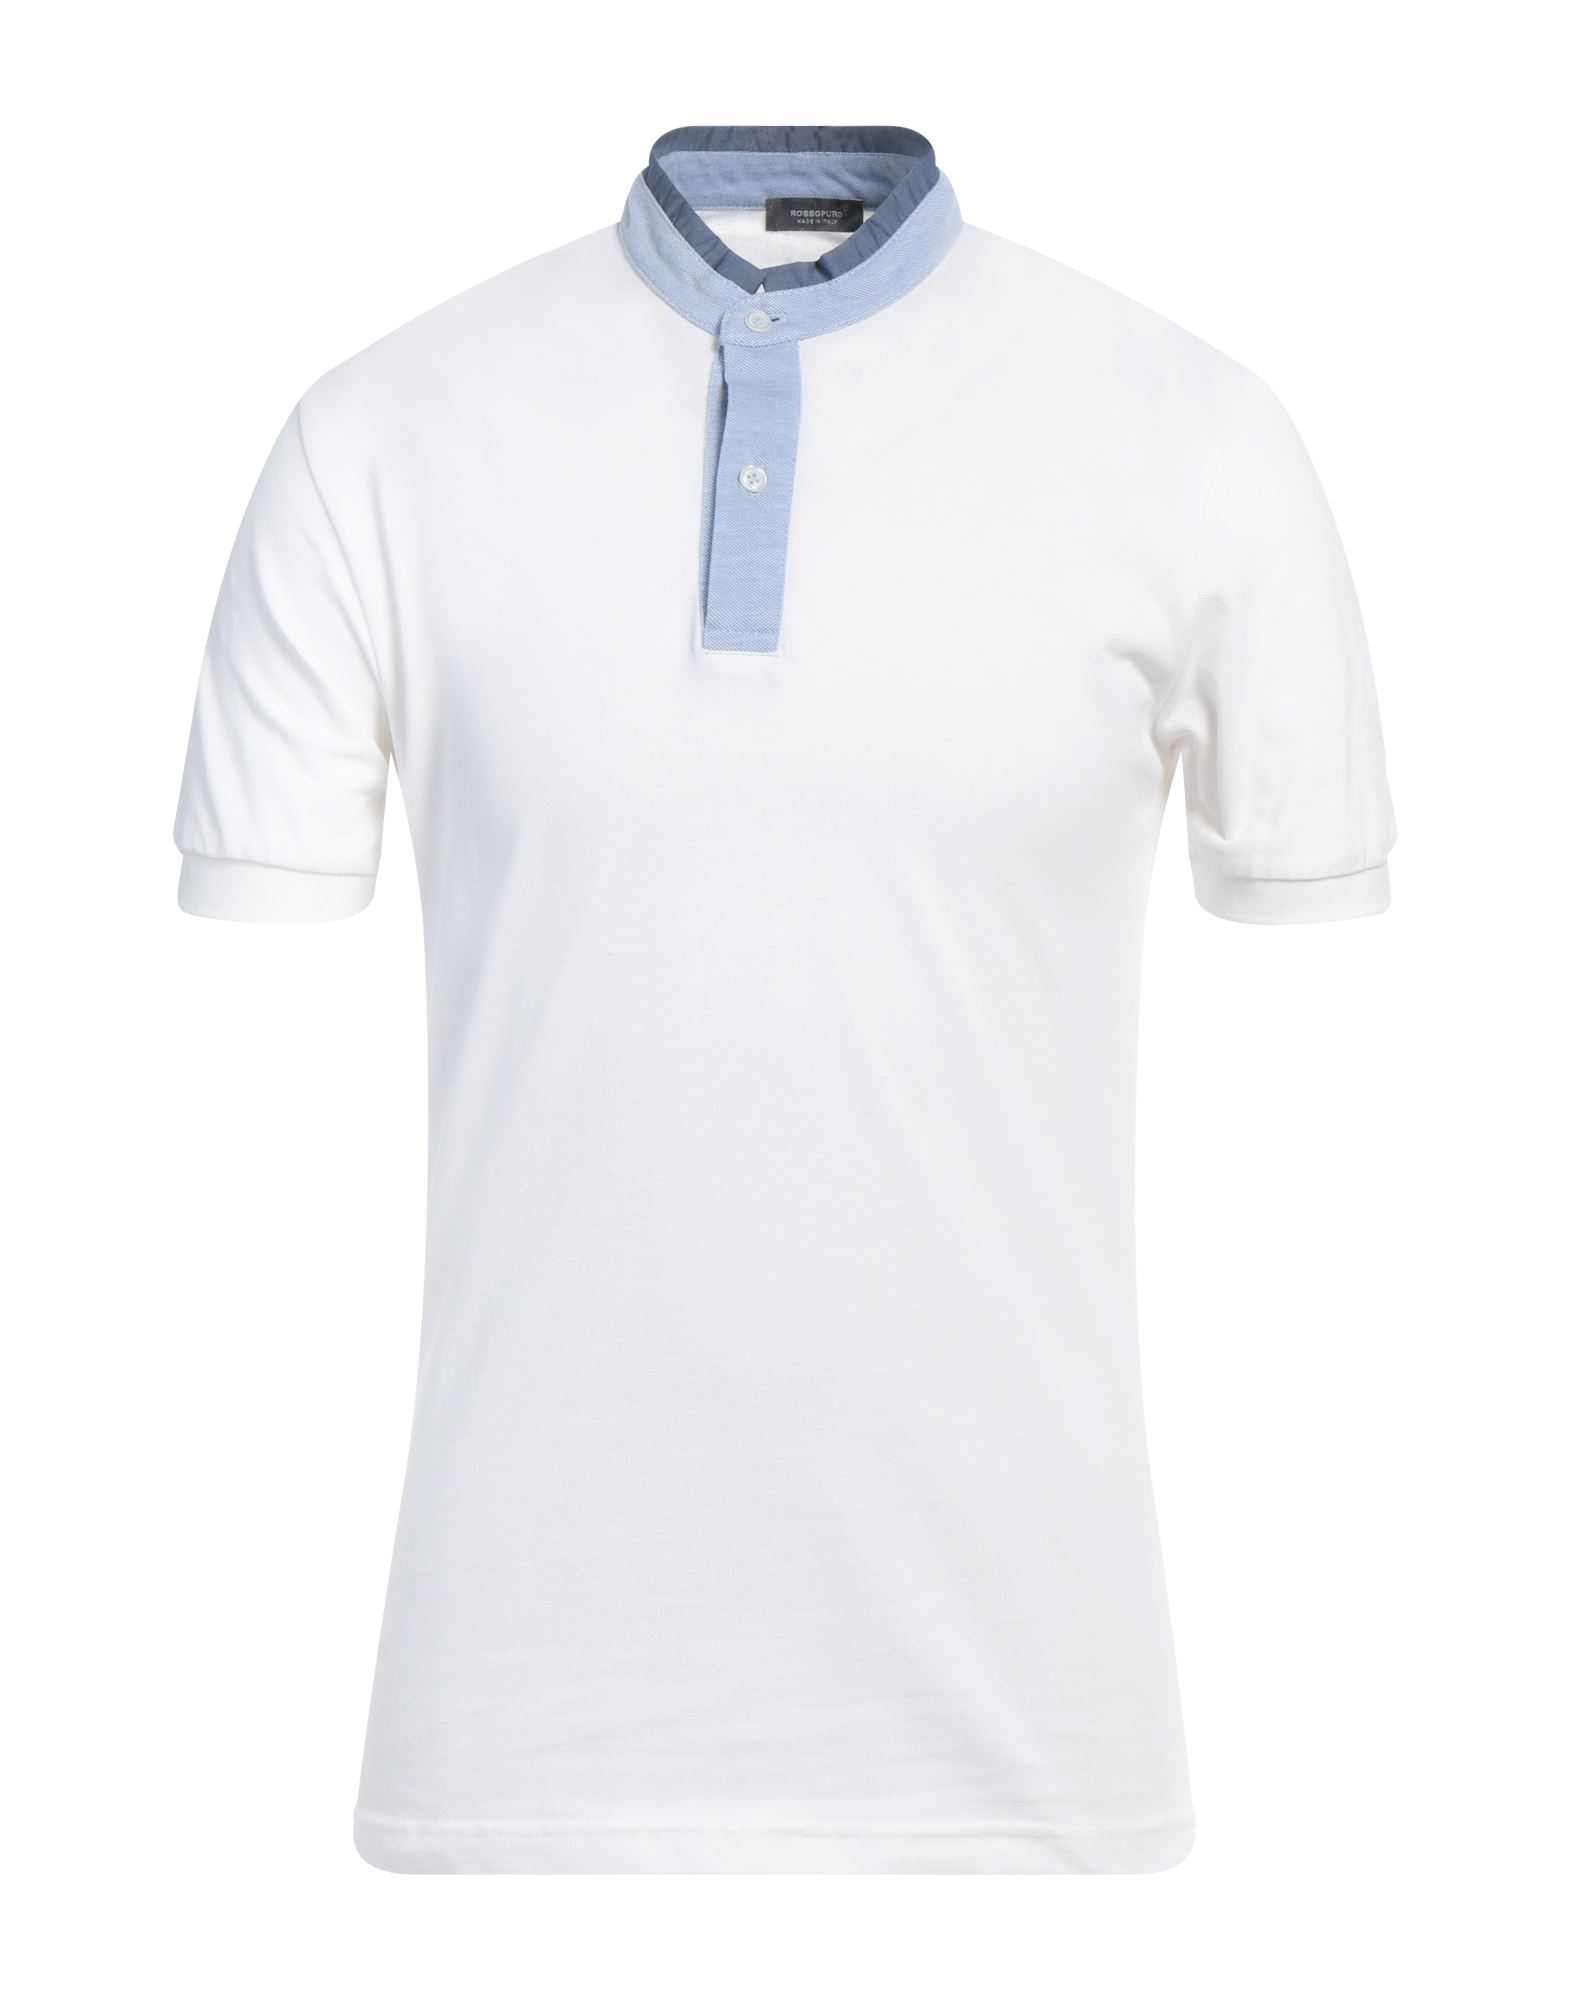 ROSSOPURO T-shirts Herren Weiß von ROSSOPURO